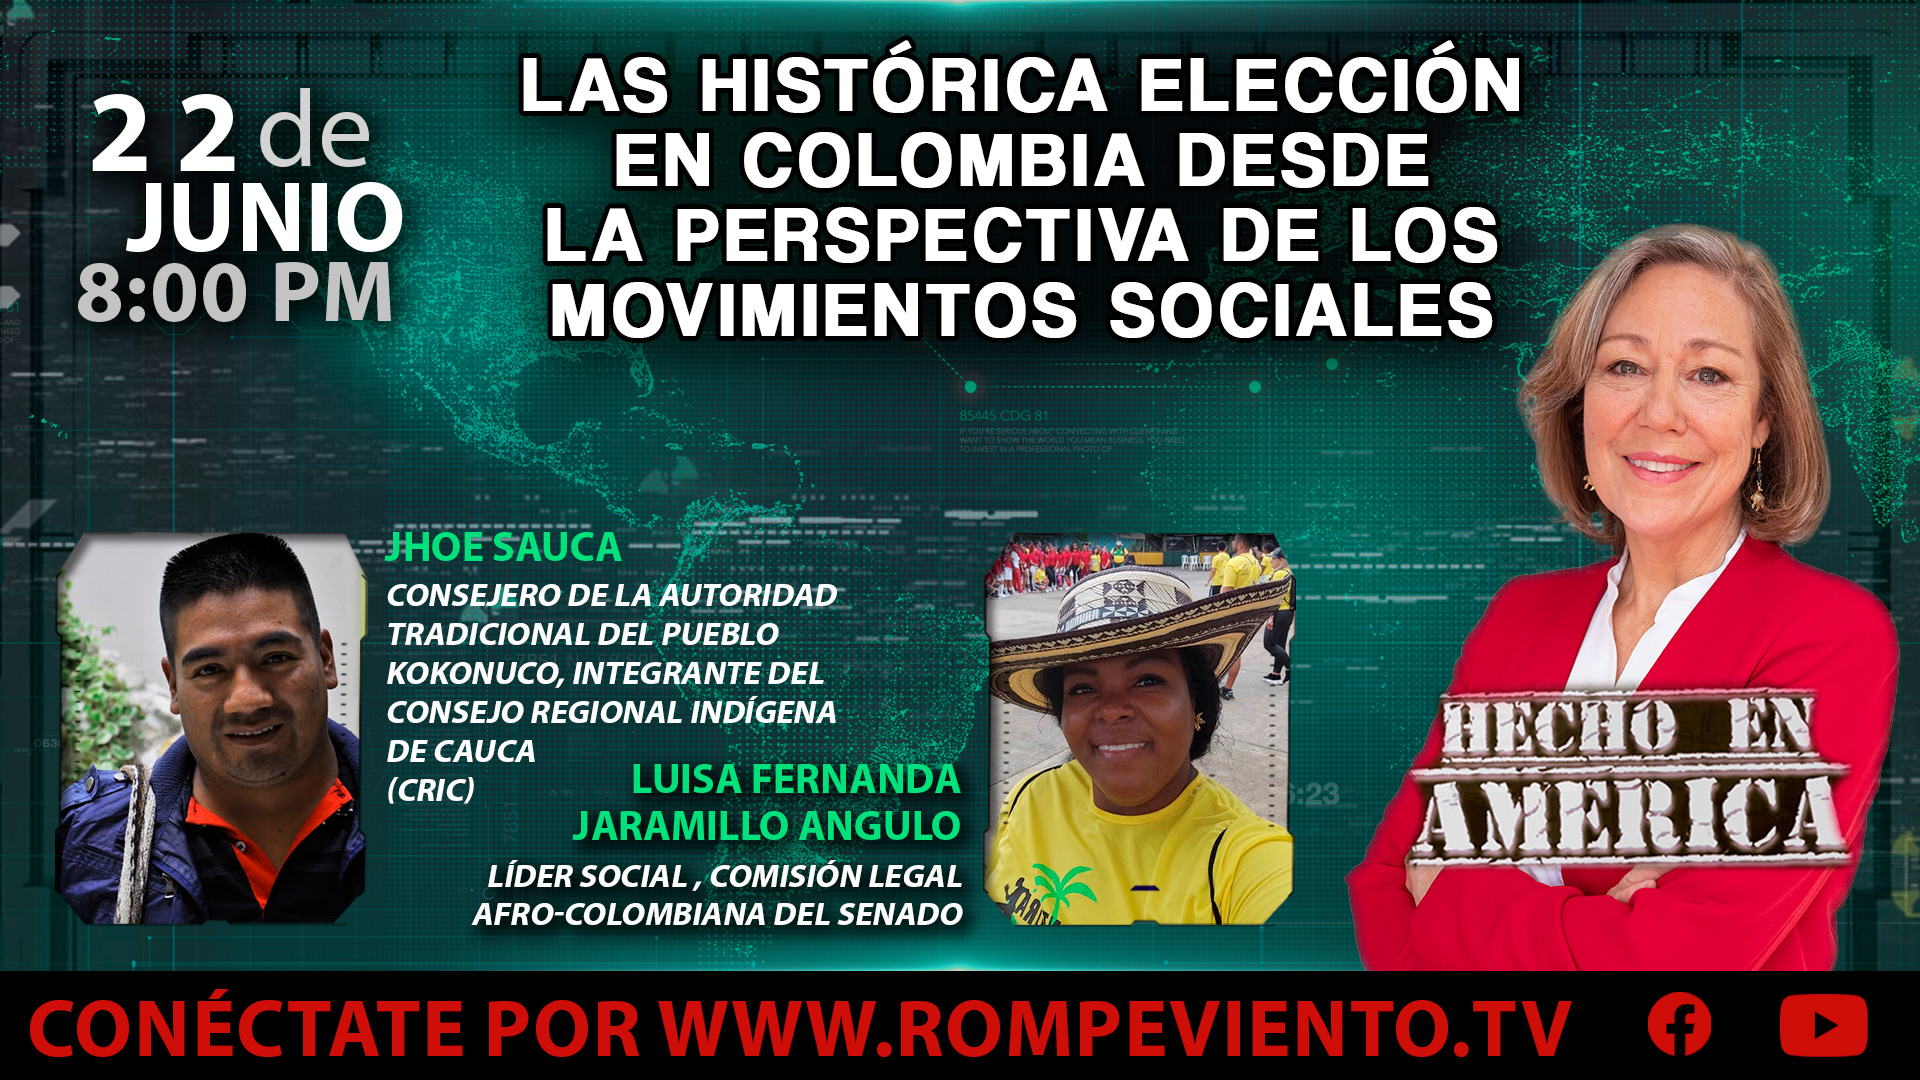 Las histórica elección en Colombia desde la perspectiva de los movimientos sociales - Hecho en América